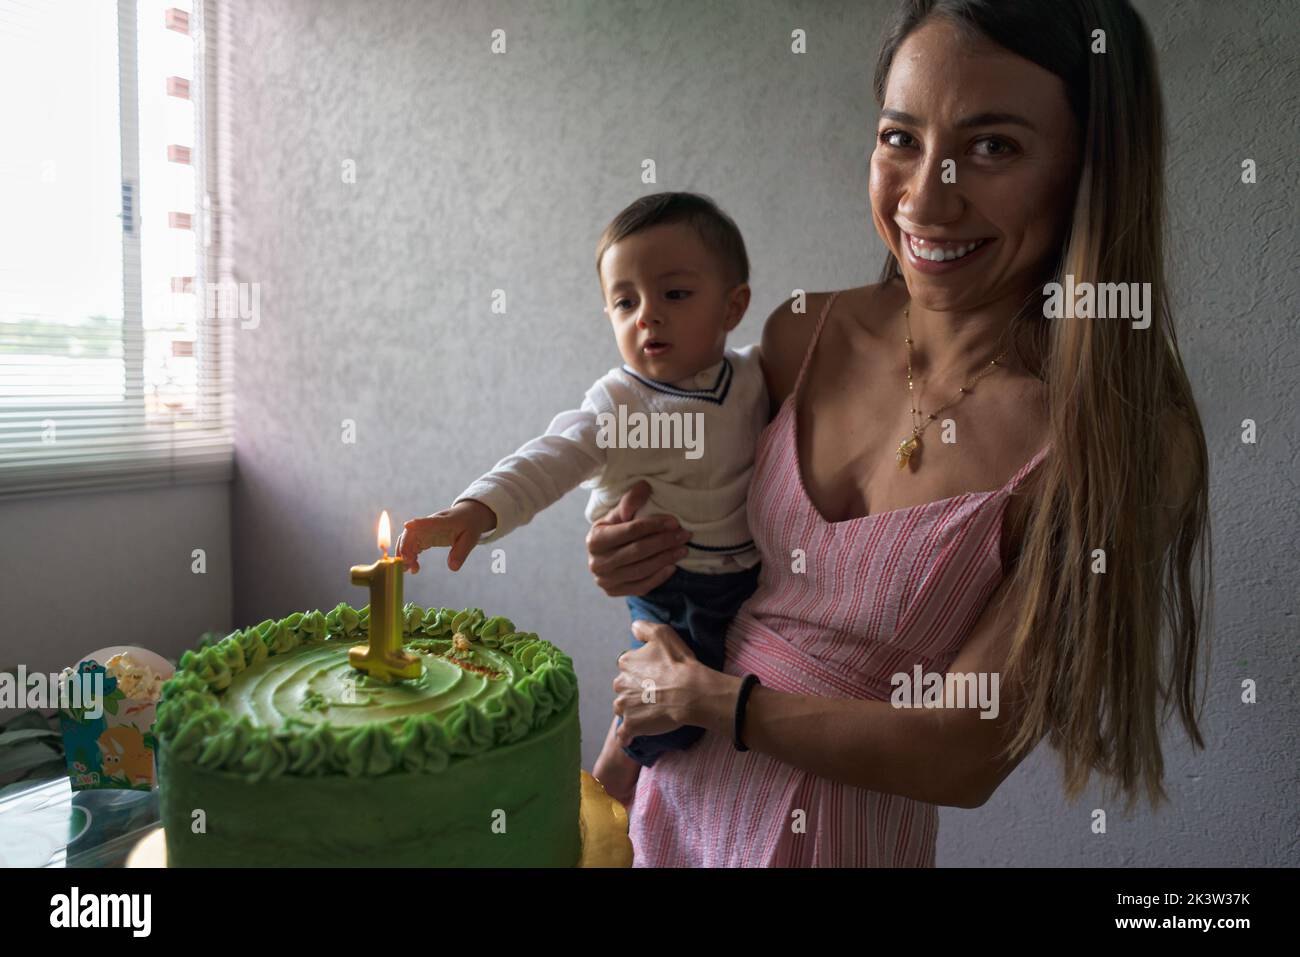 Encantado madre étnica mirando la cámara sosteniendo bebé niño mientras celebraba el cumpleaños con pastel de fiesta decorado con velas encendidas Foto de stock